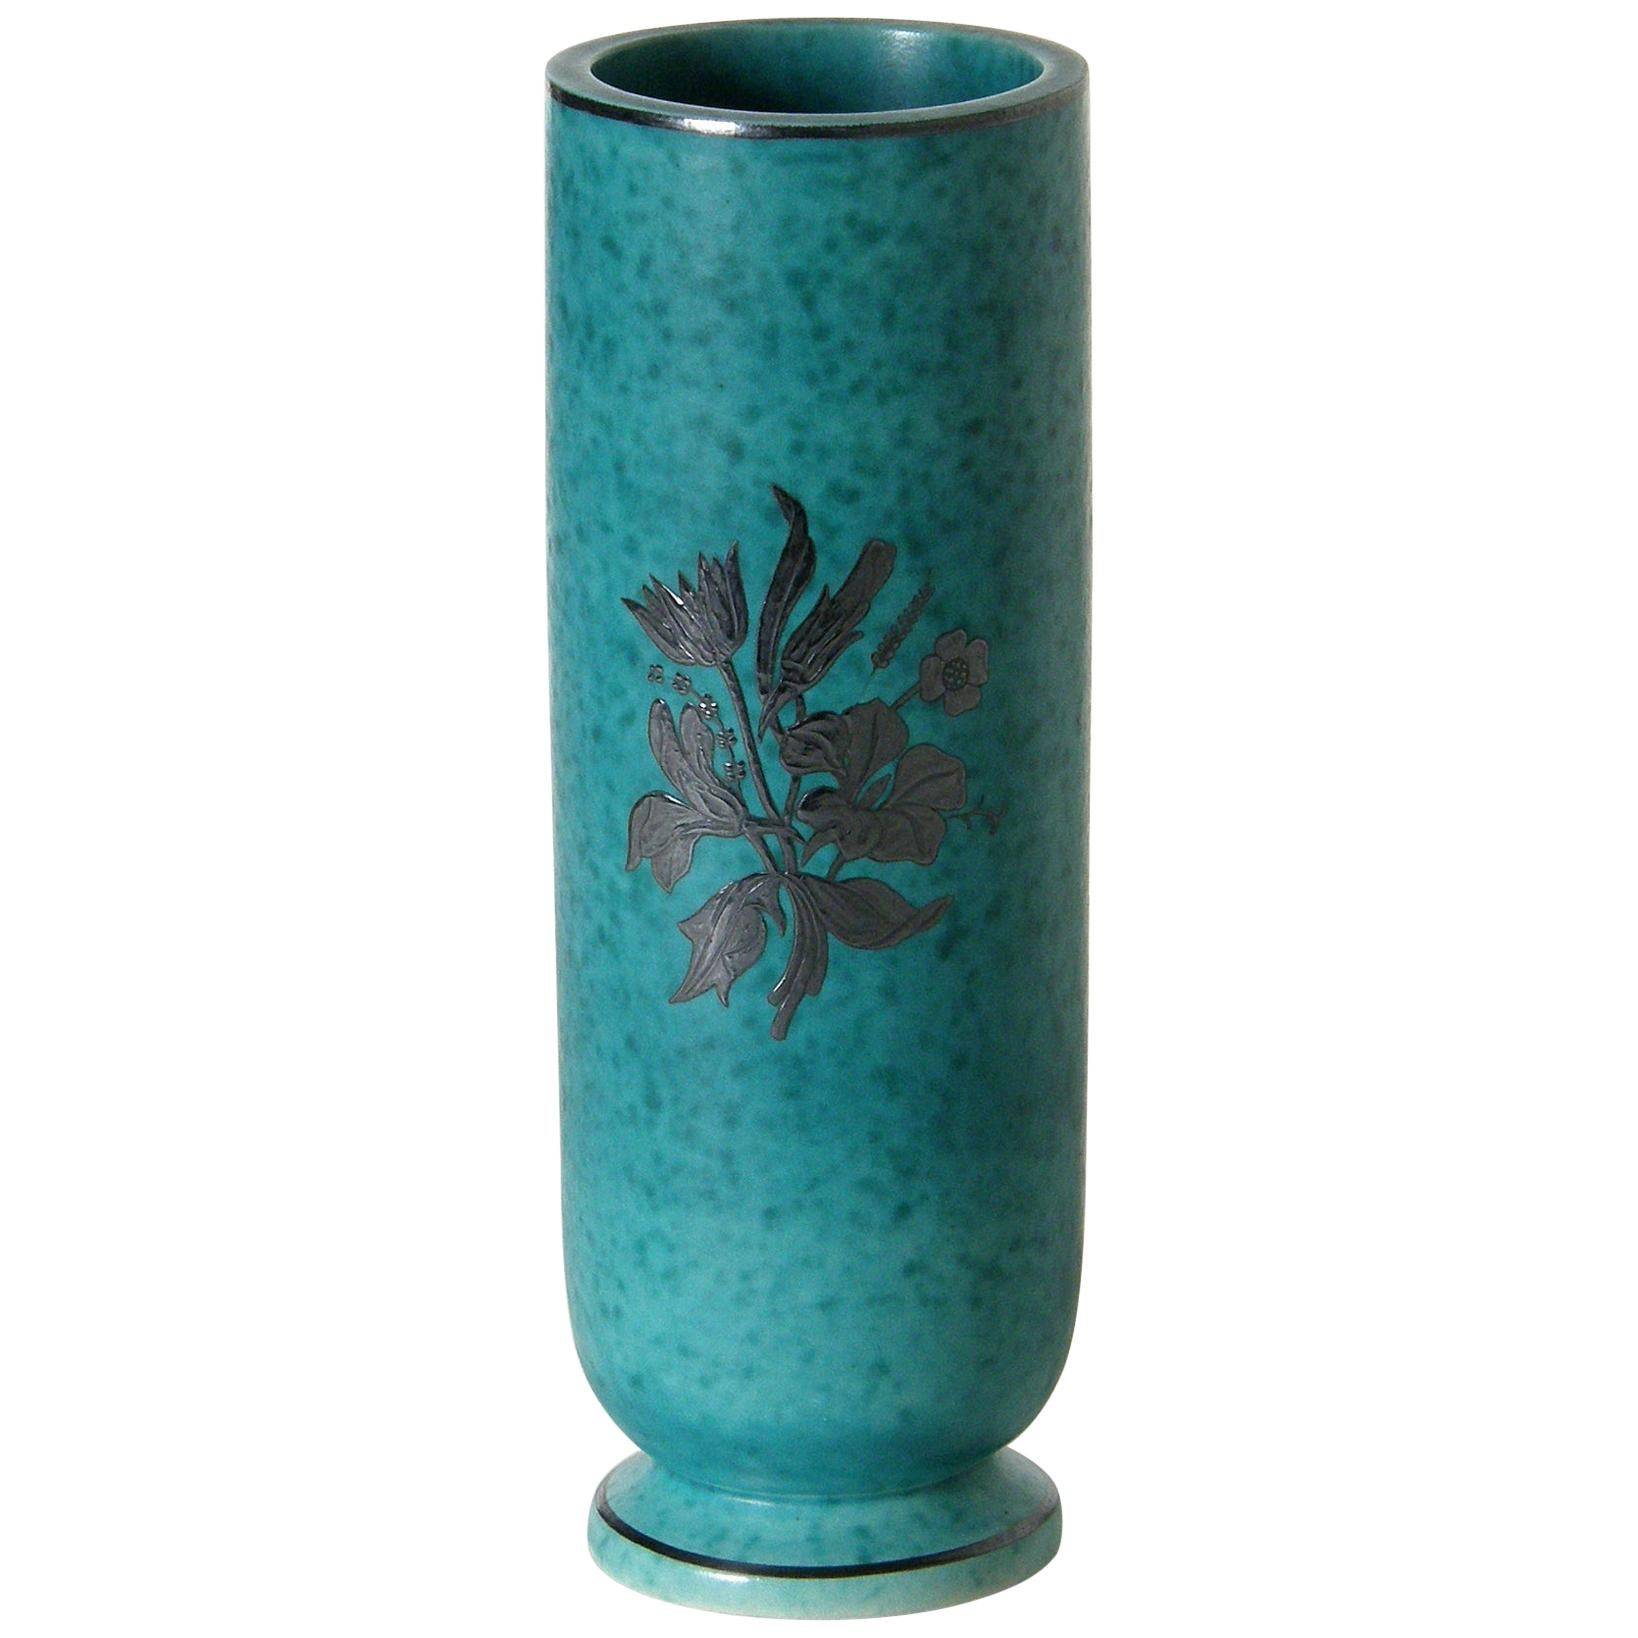 Wilhelm Kåge Argenta Ceramic Vase for Gustavsberg with Silver Floral Overlay